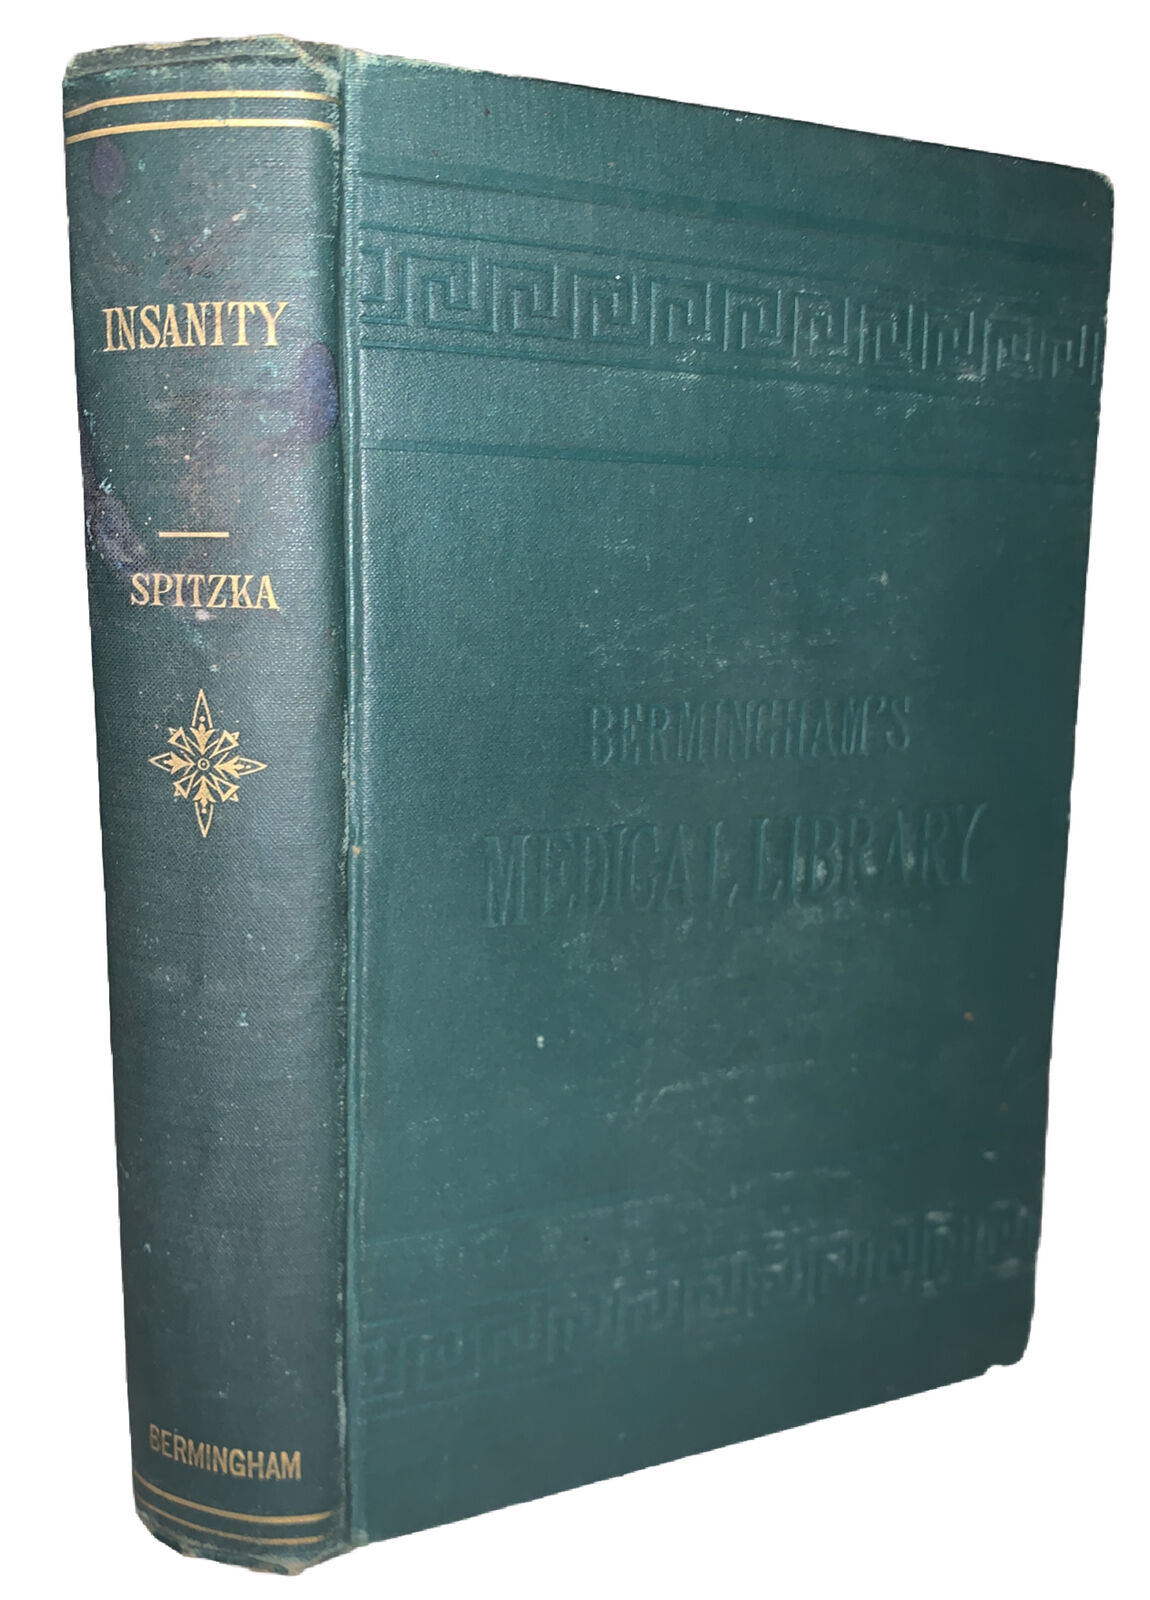 1883, 1st Ed, INSANITY, CLASSIFICATION, DIAGNOSIS & TREATMENT, by E C SPITZKA